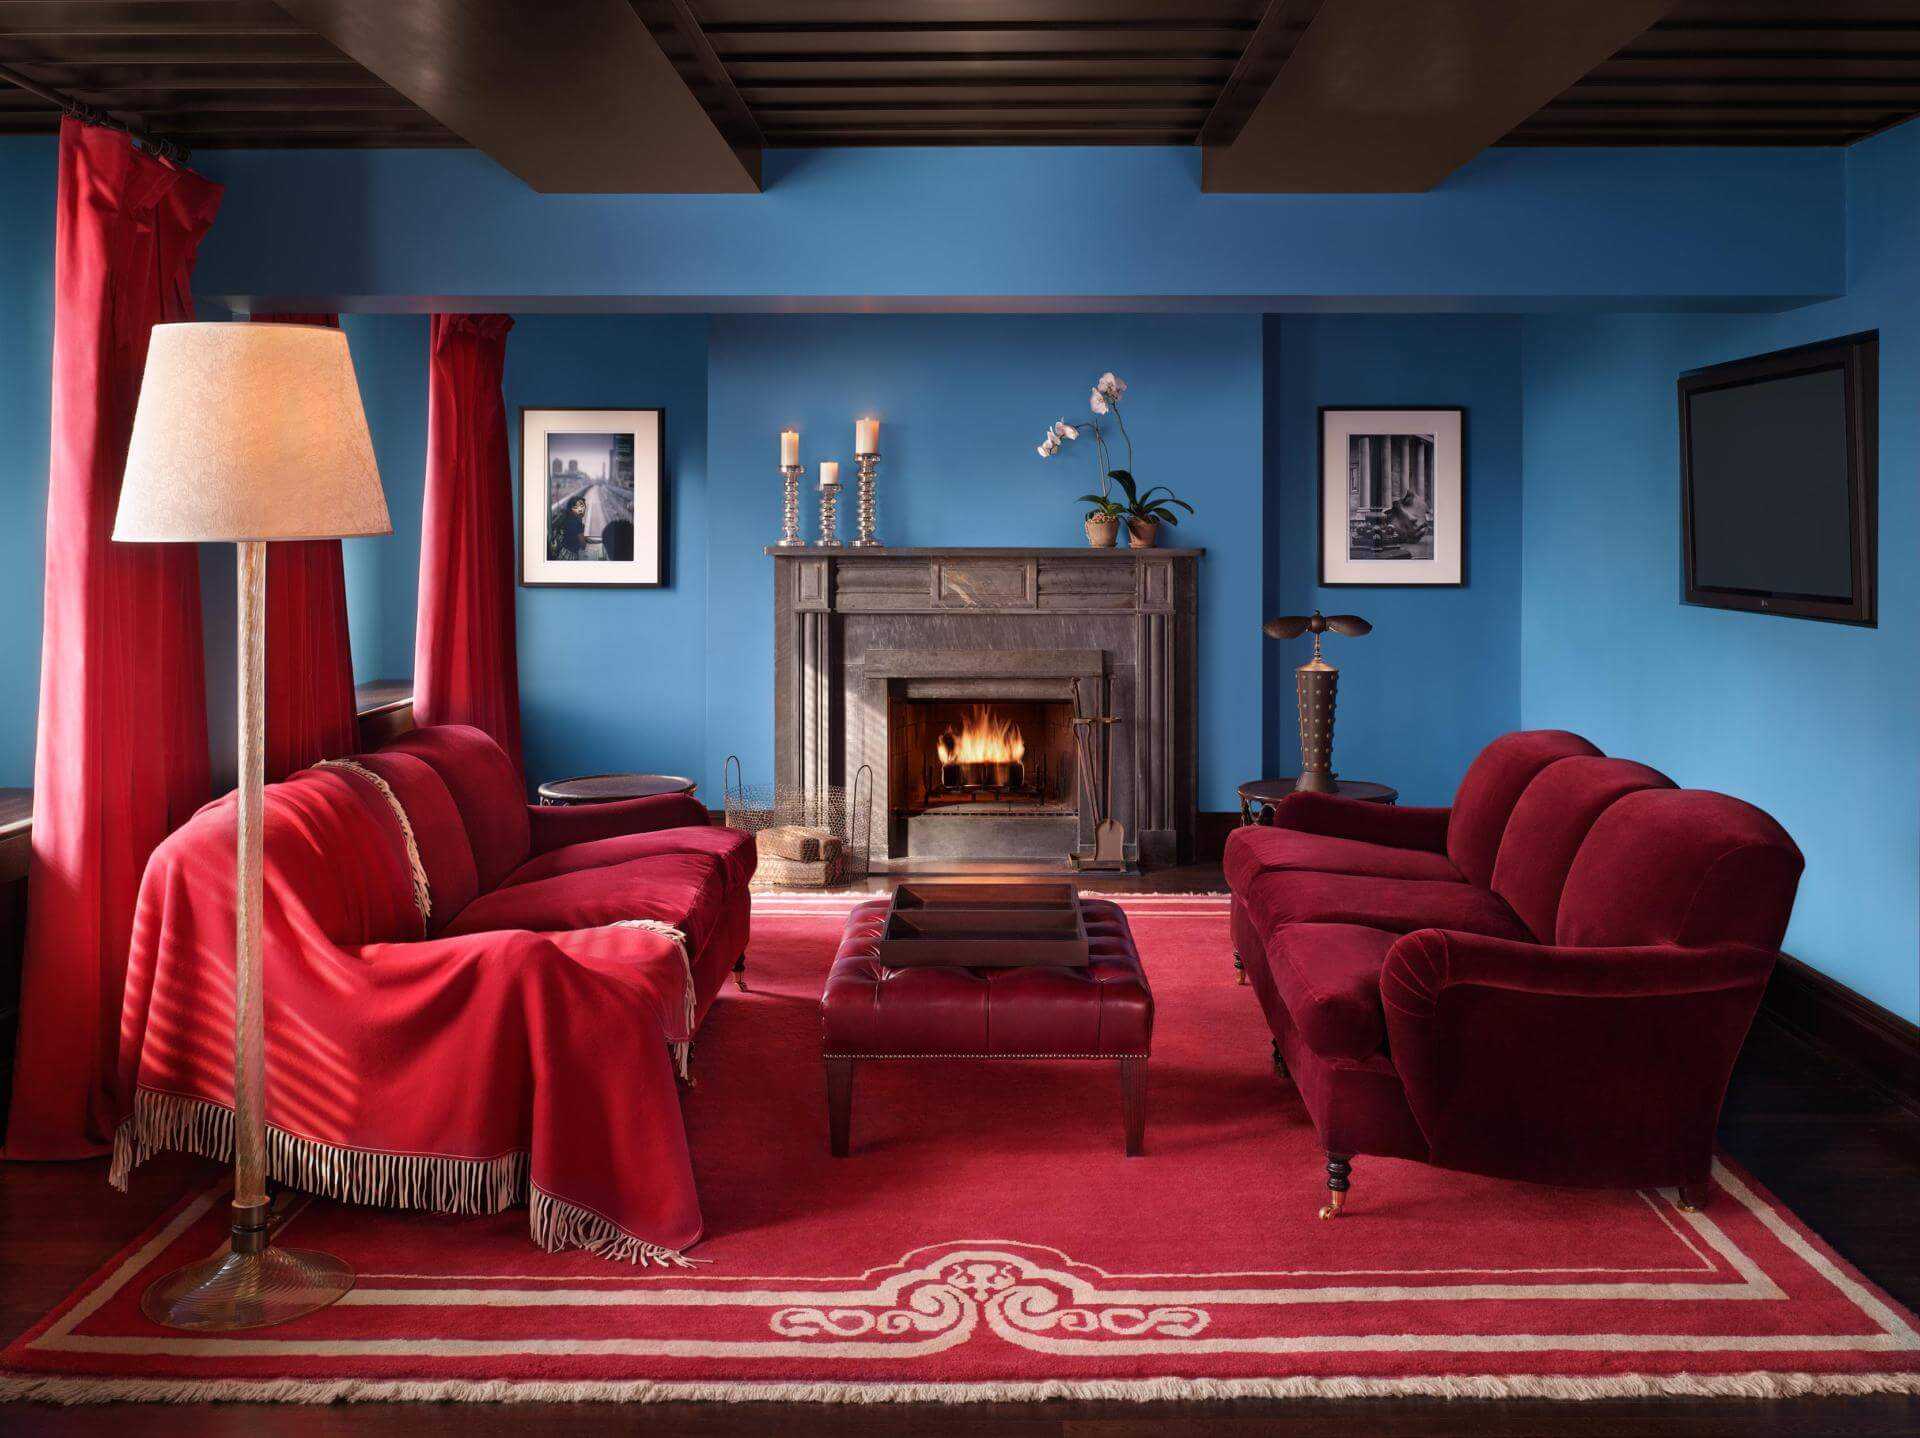 Бордовый цвет в интерьере (77 фото): с какими цветами он сочетается? бордовые стены винного оттенка и диван цвета марсала в гостиной